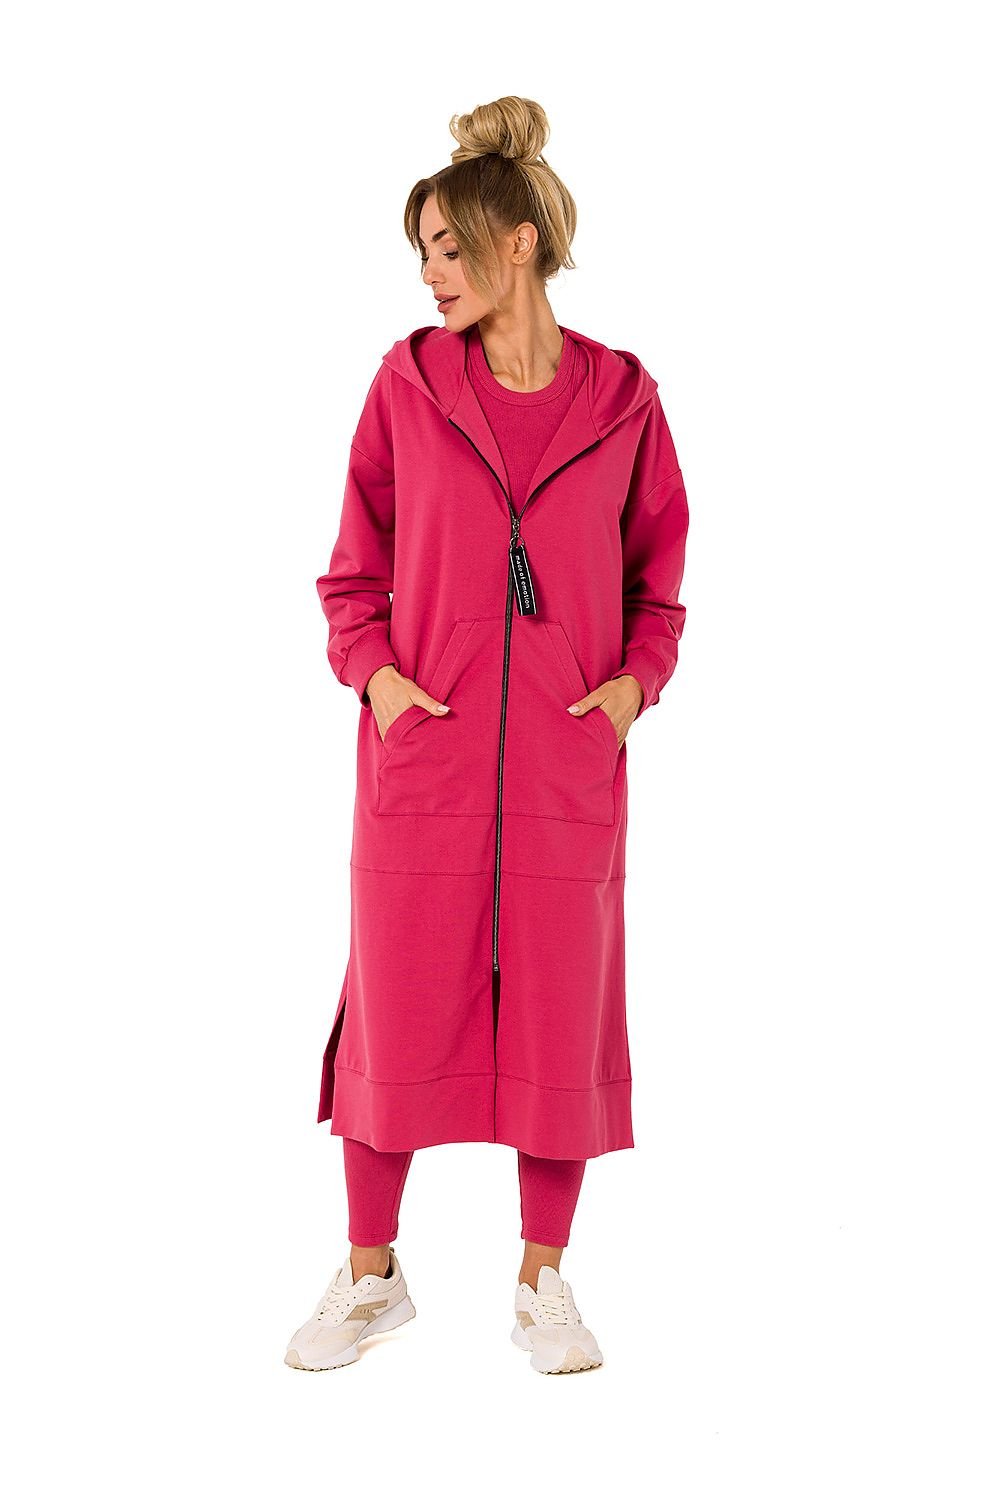 TEEK - Plus Size Zip Hoodie Sweatshirt Coat COAT TEEK MH pink 2XL/3XL 